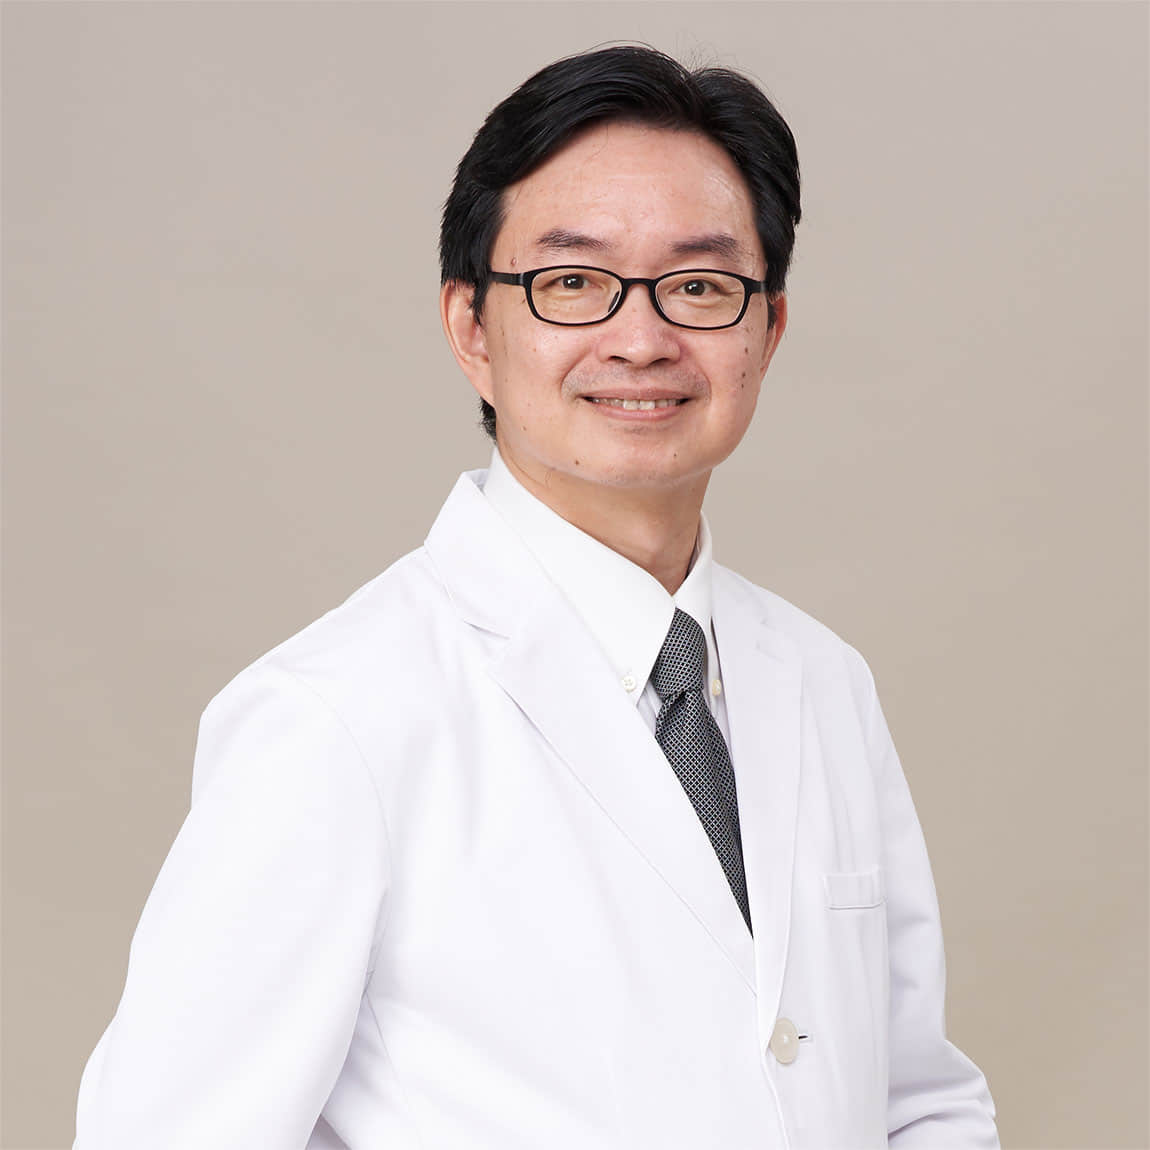 何彦秉  Dr. ホー  Jason Yen-Ping Ho, MD., 副院長.